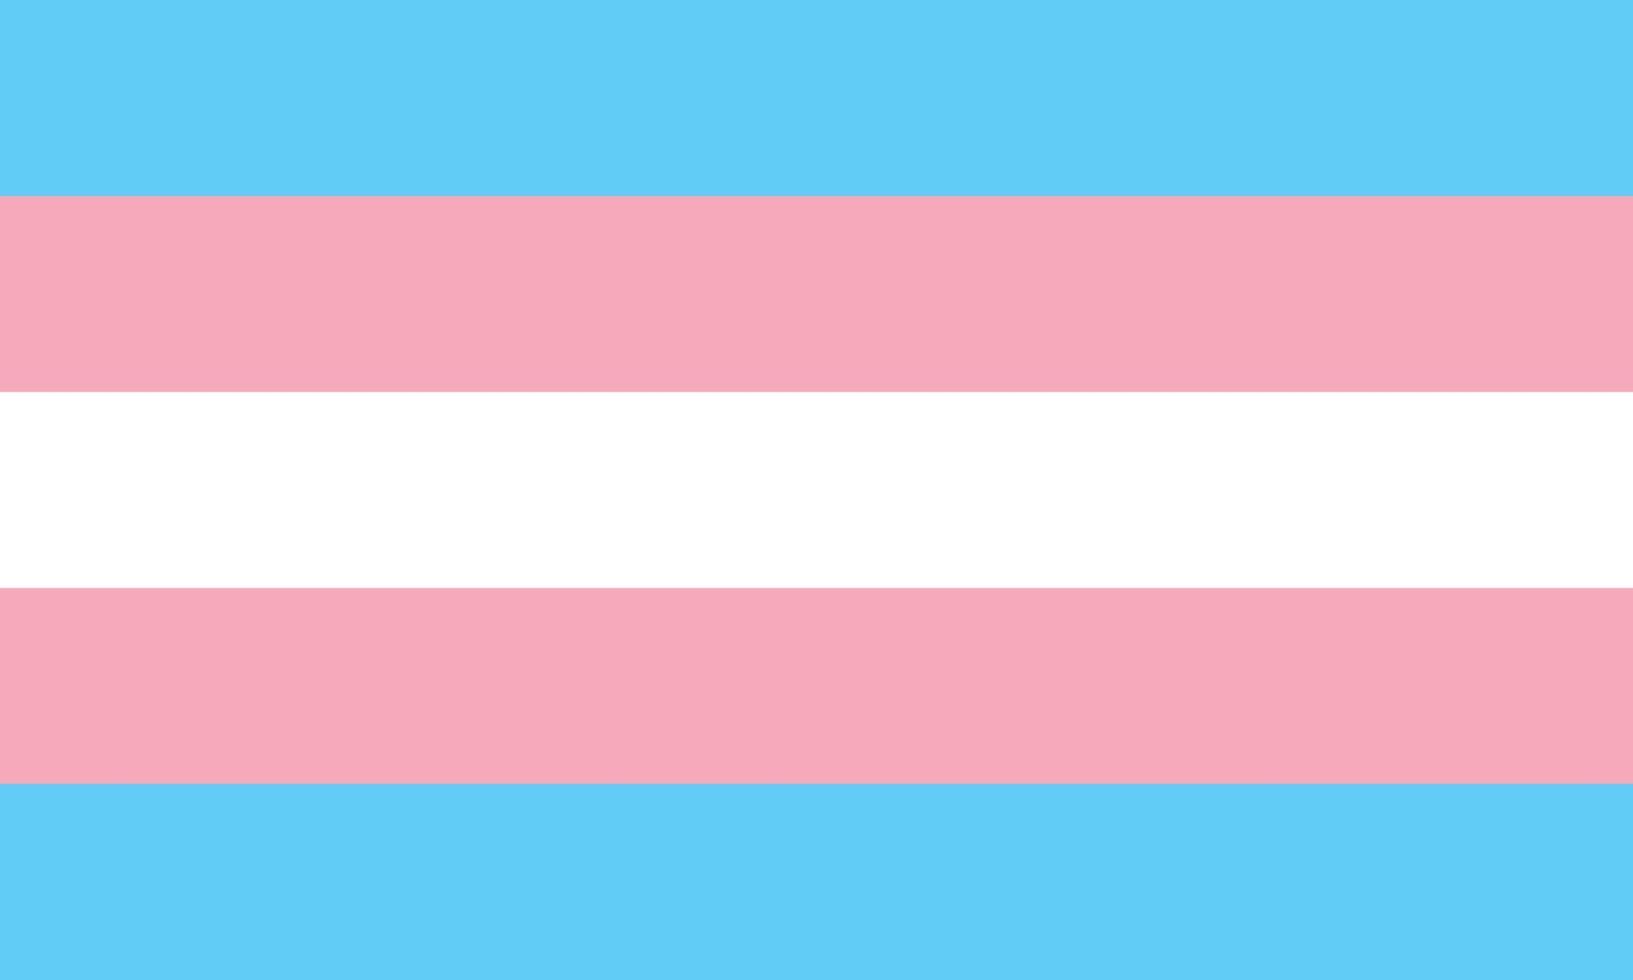 de transgender-trotsvlag - lichtblauw, roze en wit vijfkleurig gestreepte trotsvlag, symbool van de transgendergemeenschap. onderdeel van de lgbt-serie symbolen vector